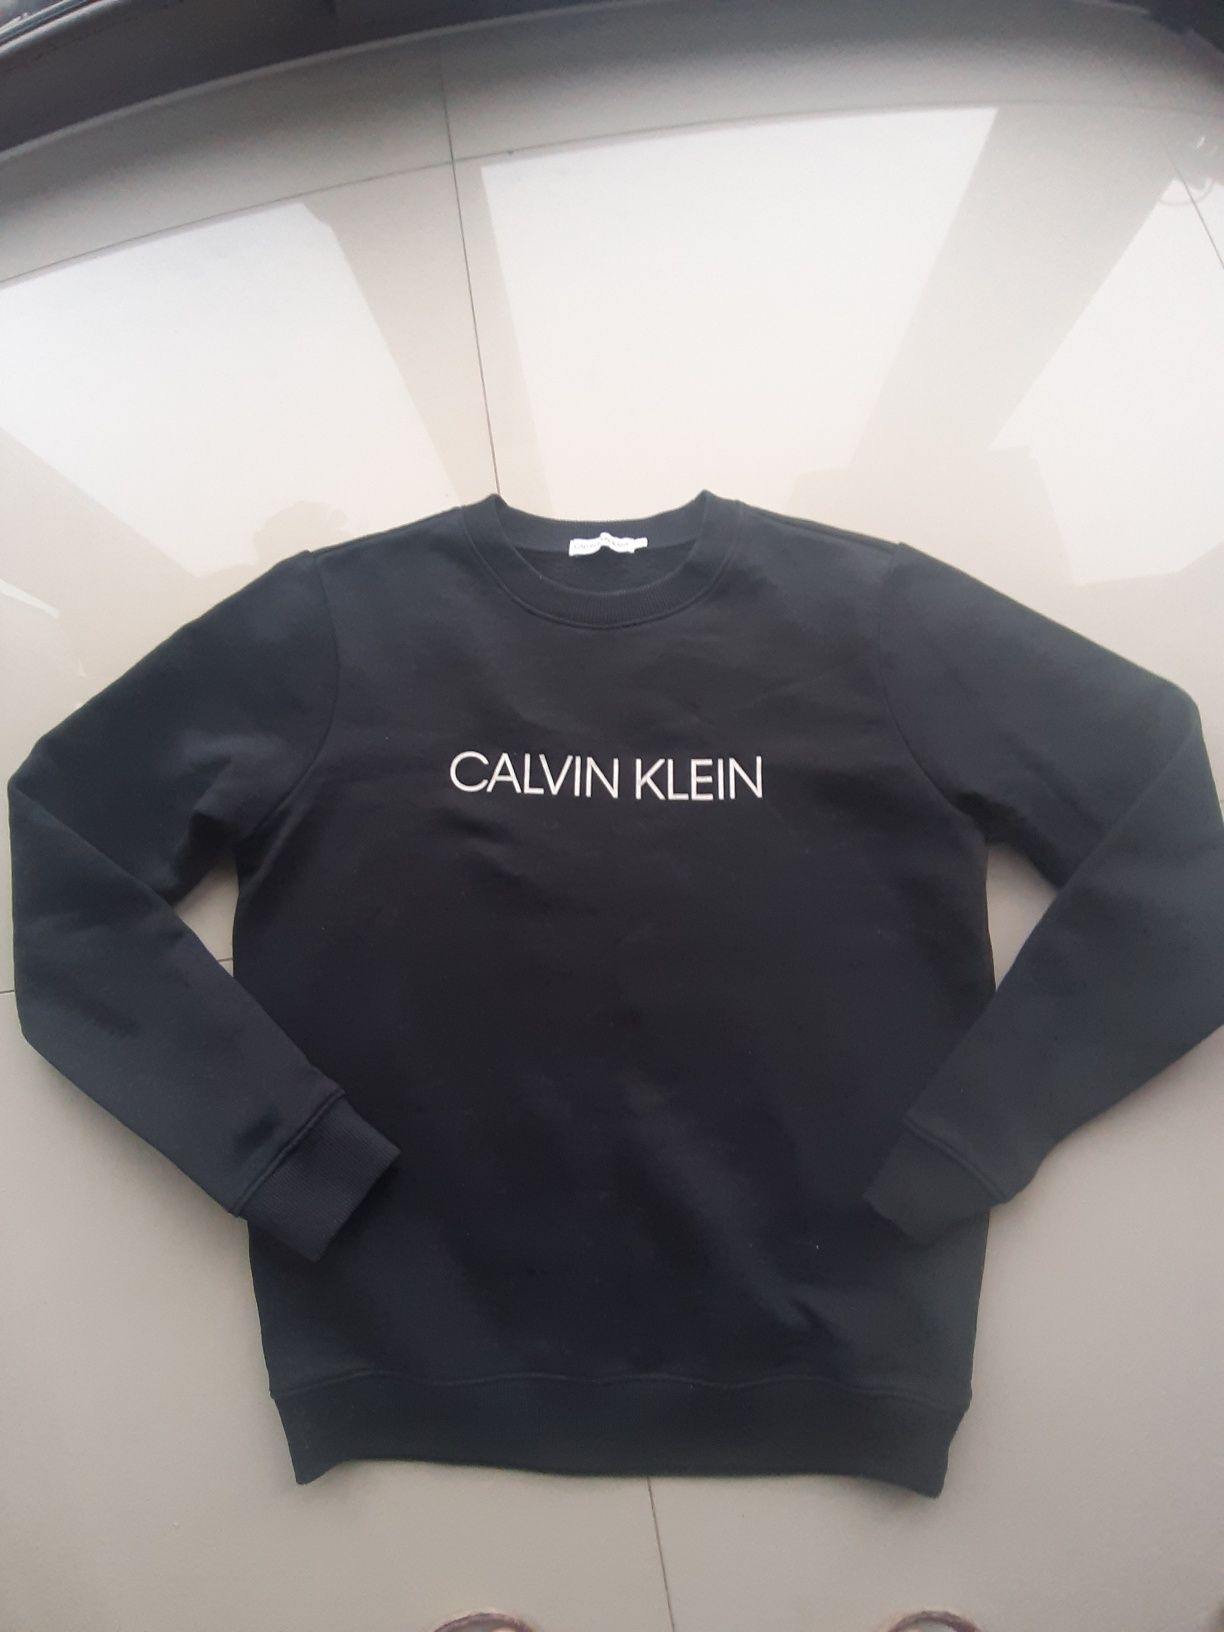 Bluza męska jak nowa Calvin Klein rozmiar S.